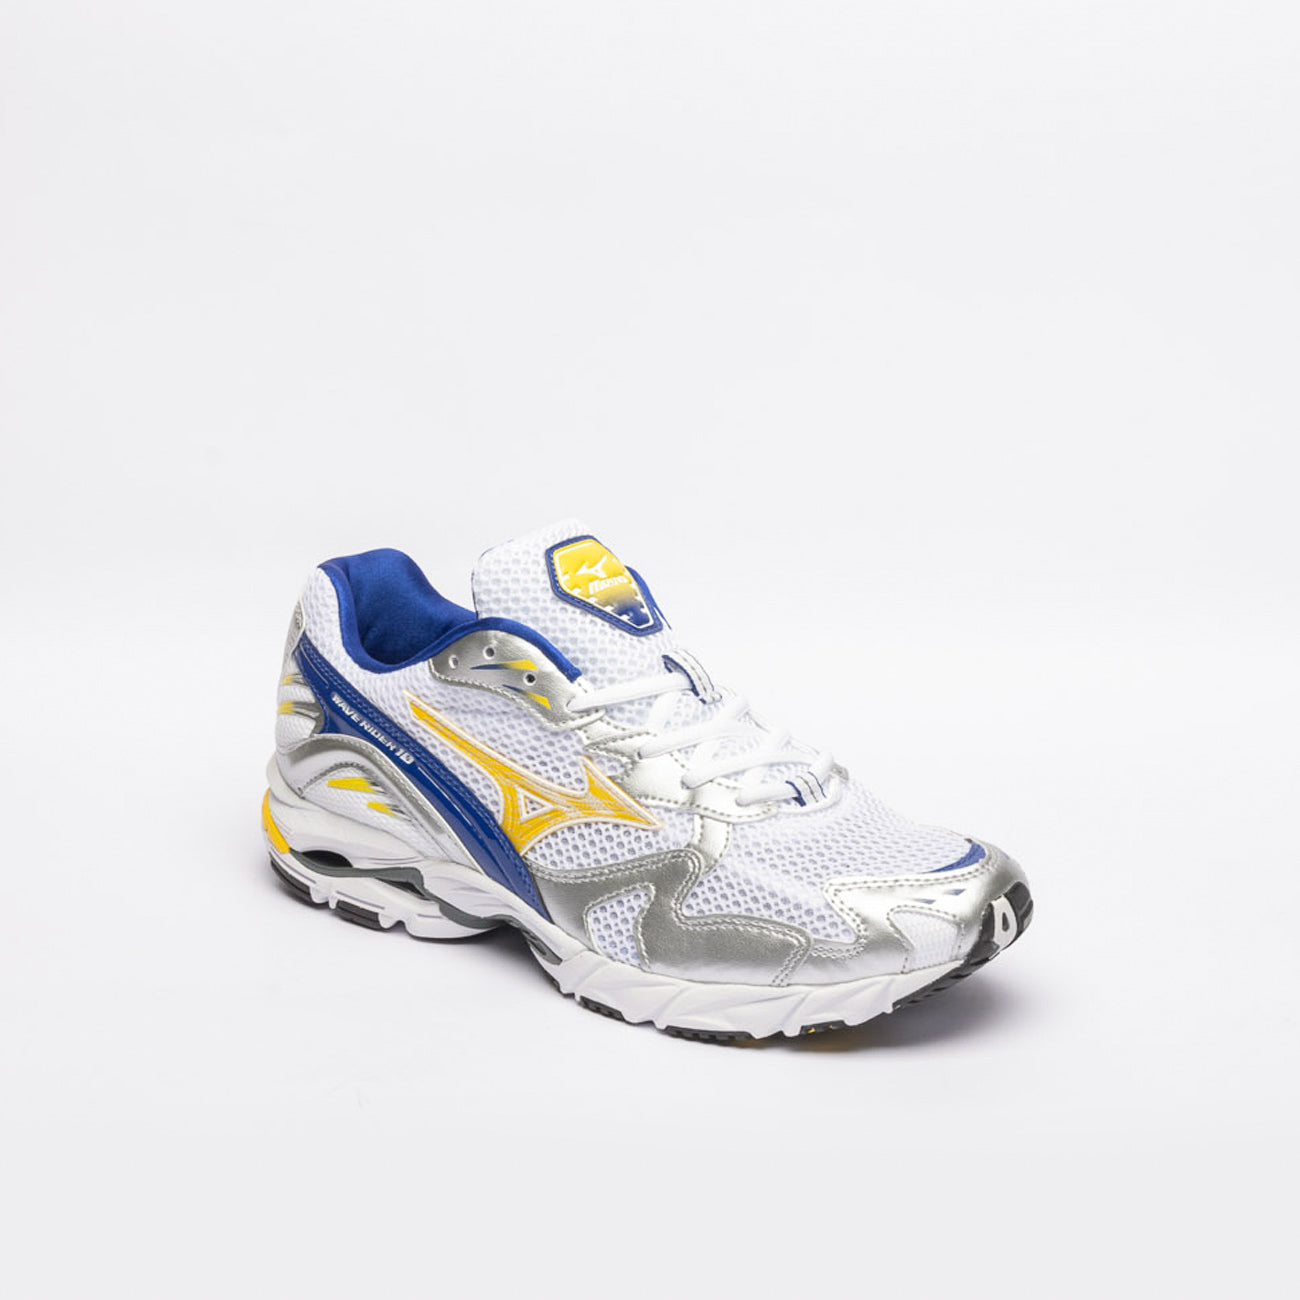 Sneaker running Mizuno Wave Rider 10 in nylon bianco con pelle blu e gialla